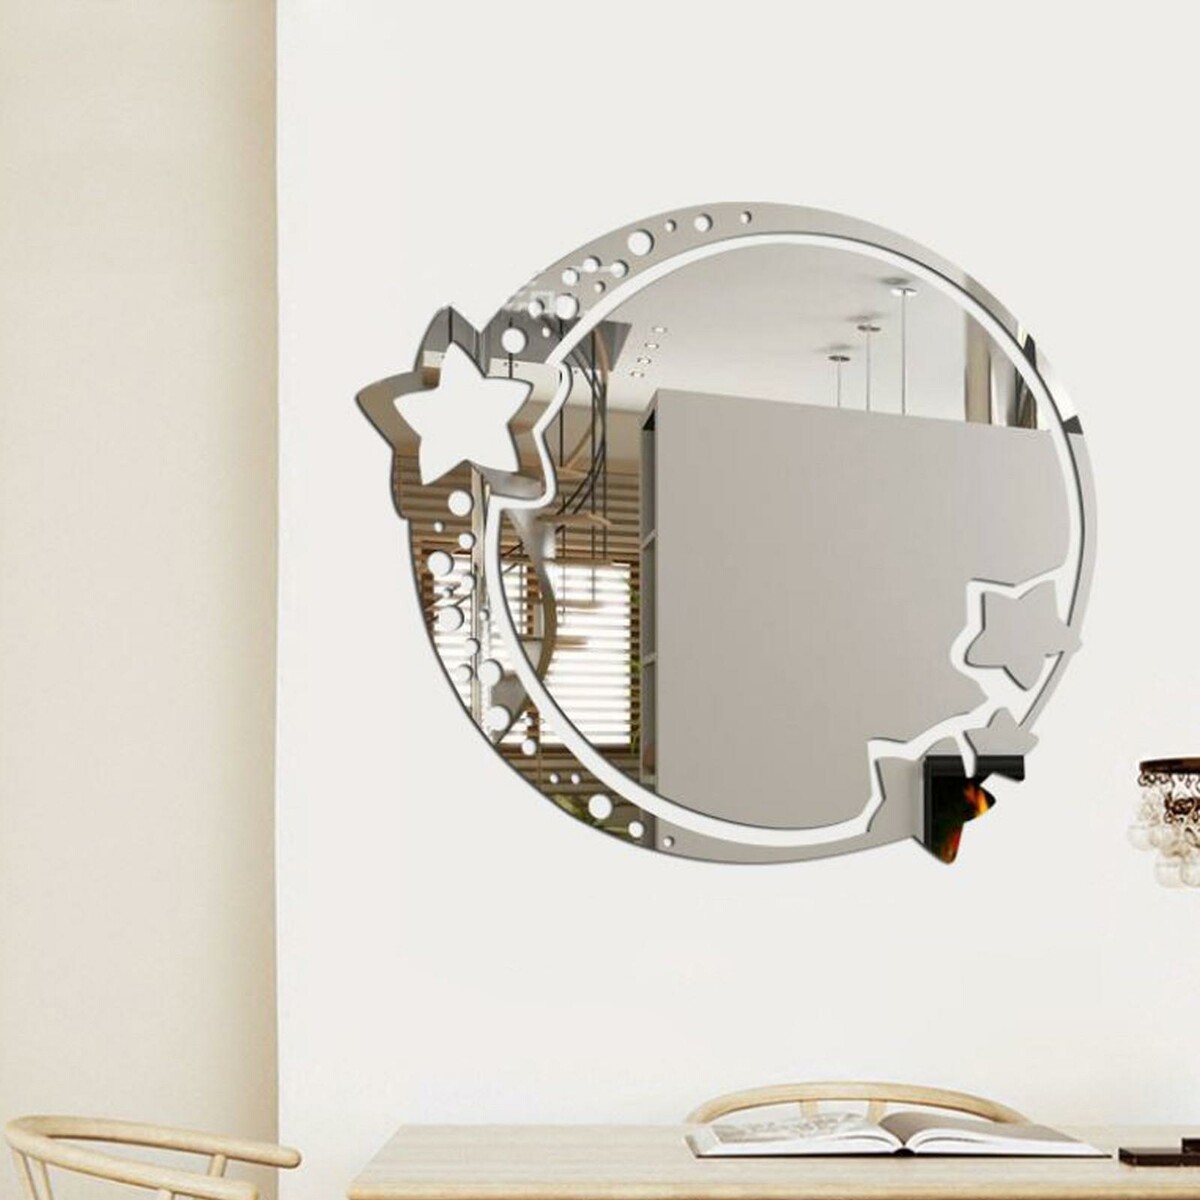 Зеркало настенное, наклейки интерьерные, зеркальные, декор на стену, панно 22 х 19 см зеркало wasserkraft k 1001 9061825